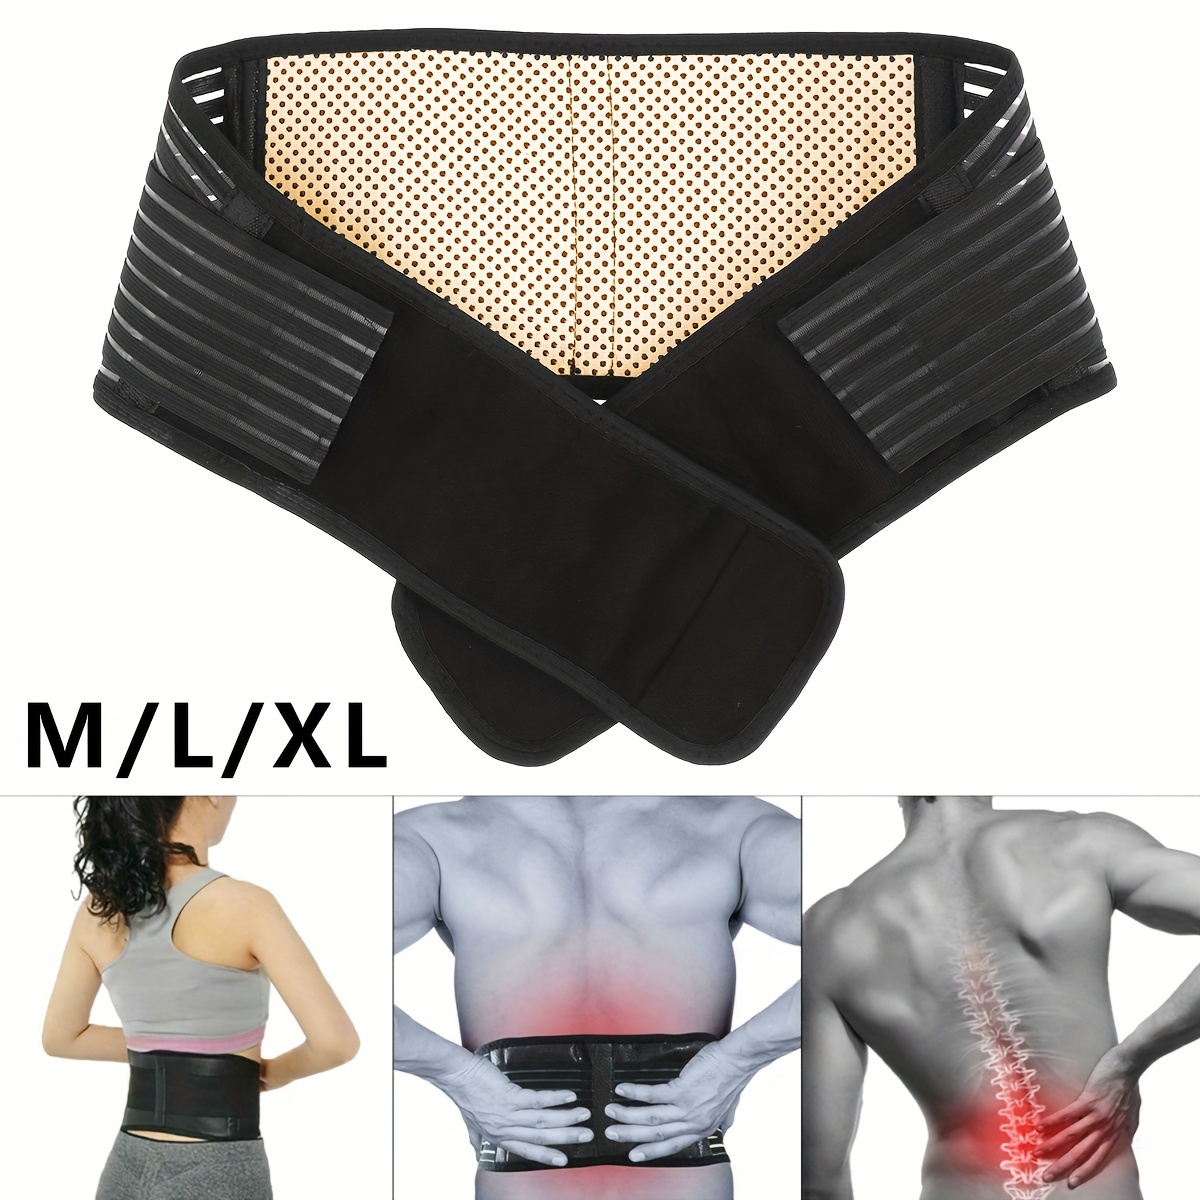 TANGIST Soporte lumbar para espalda baja – Cinturón de soporte de espalda  para aliviar el dolor de cintura, hernia de disco, ciática, escoliosis